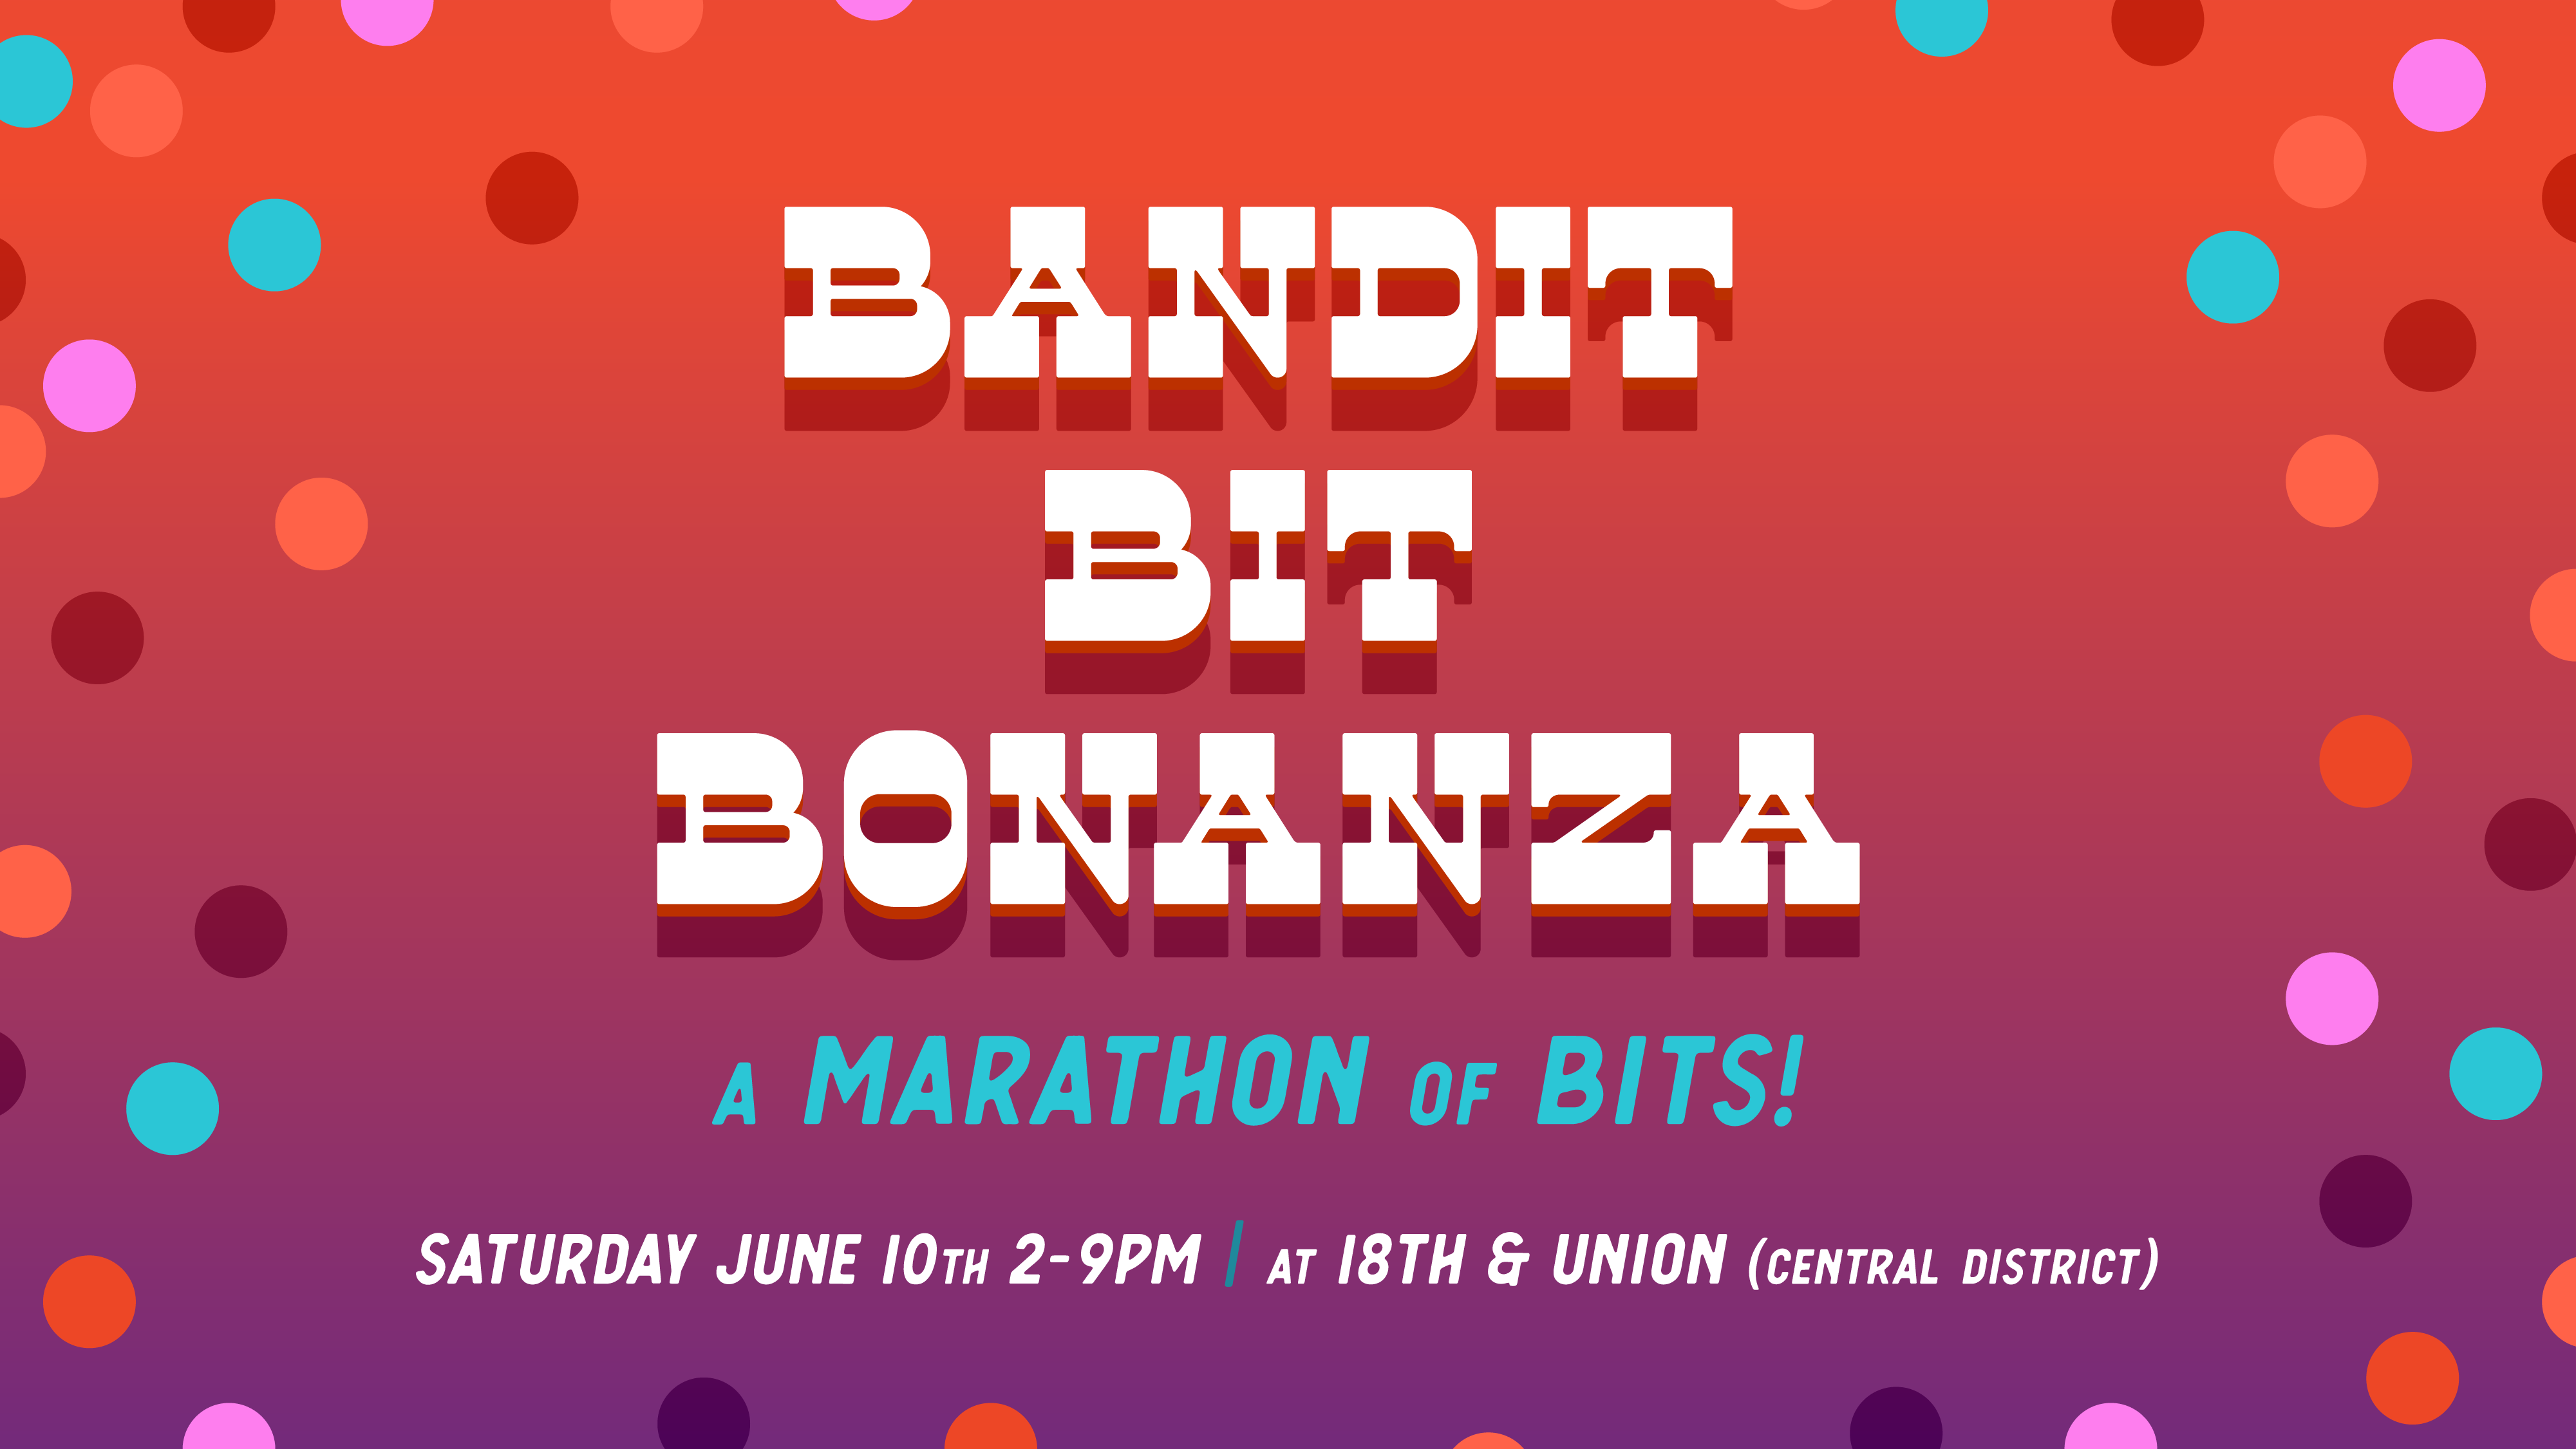 Bandit Bit Bonanza Block 4: 6:30pm - 7:45pm